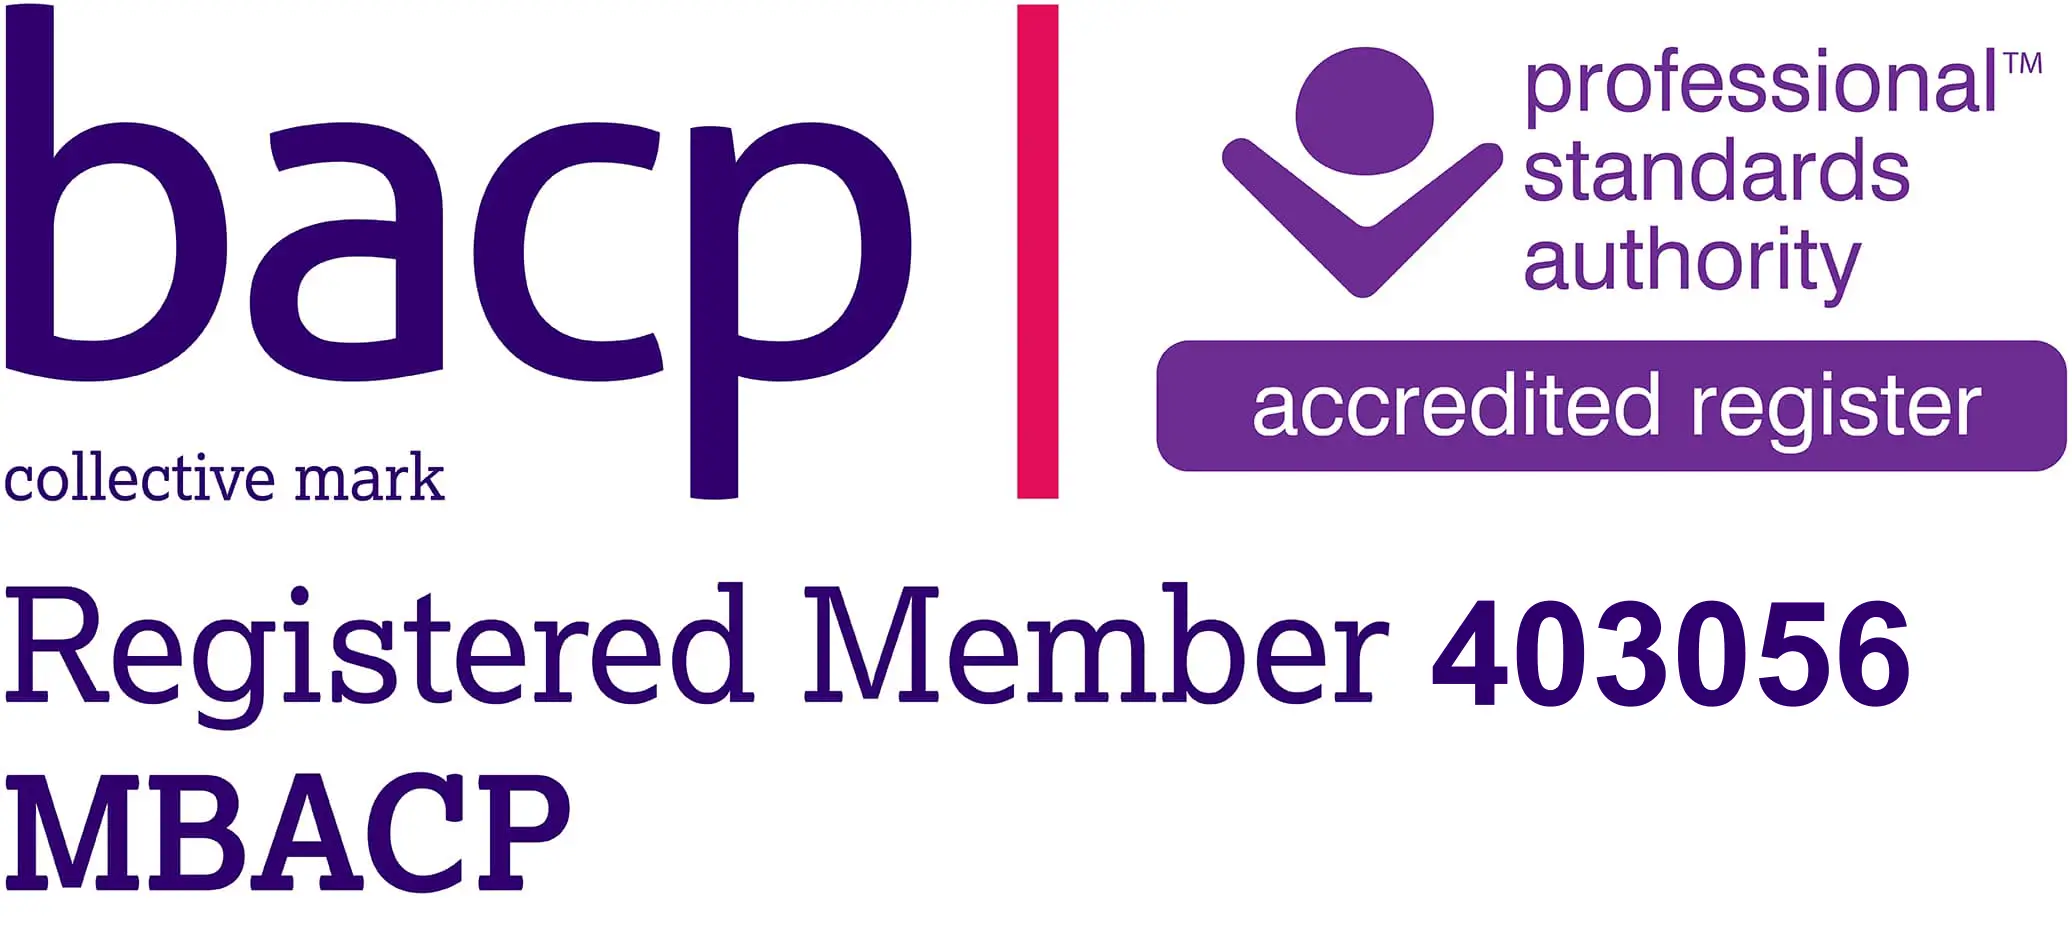 BACP registered member: 403056